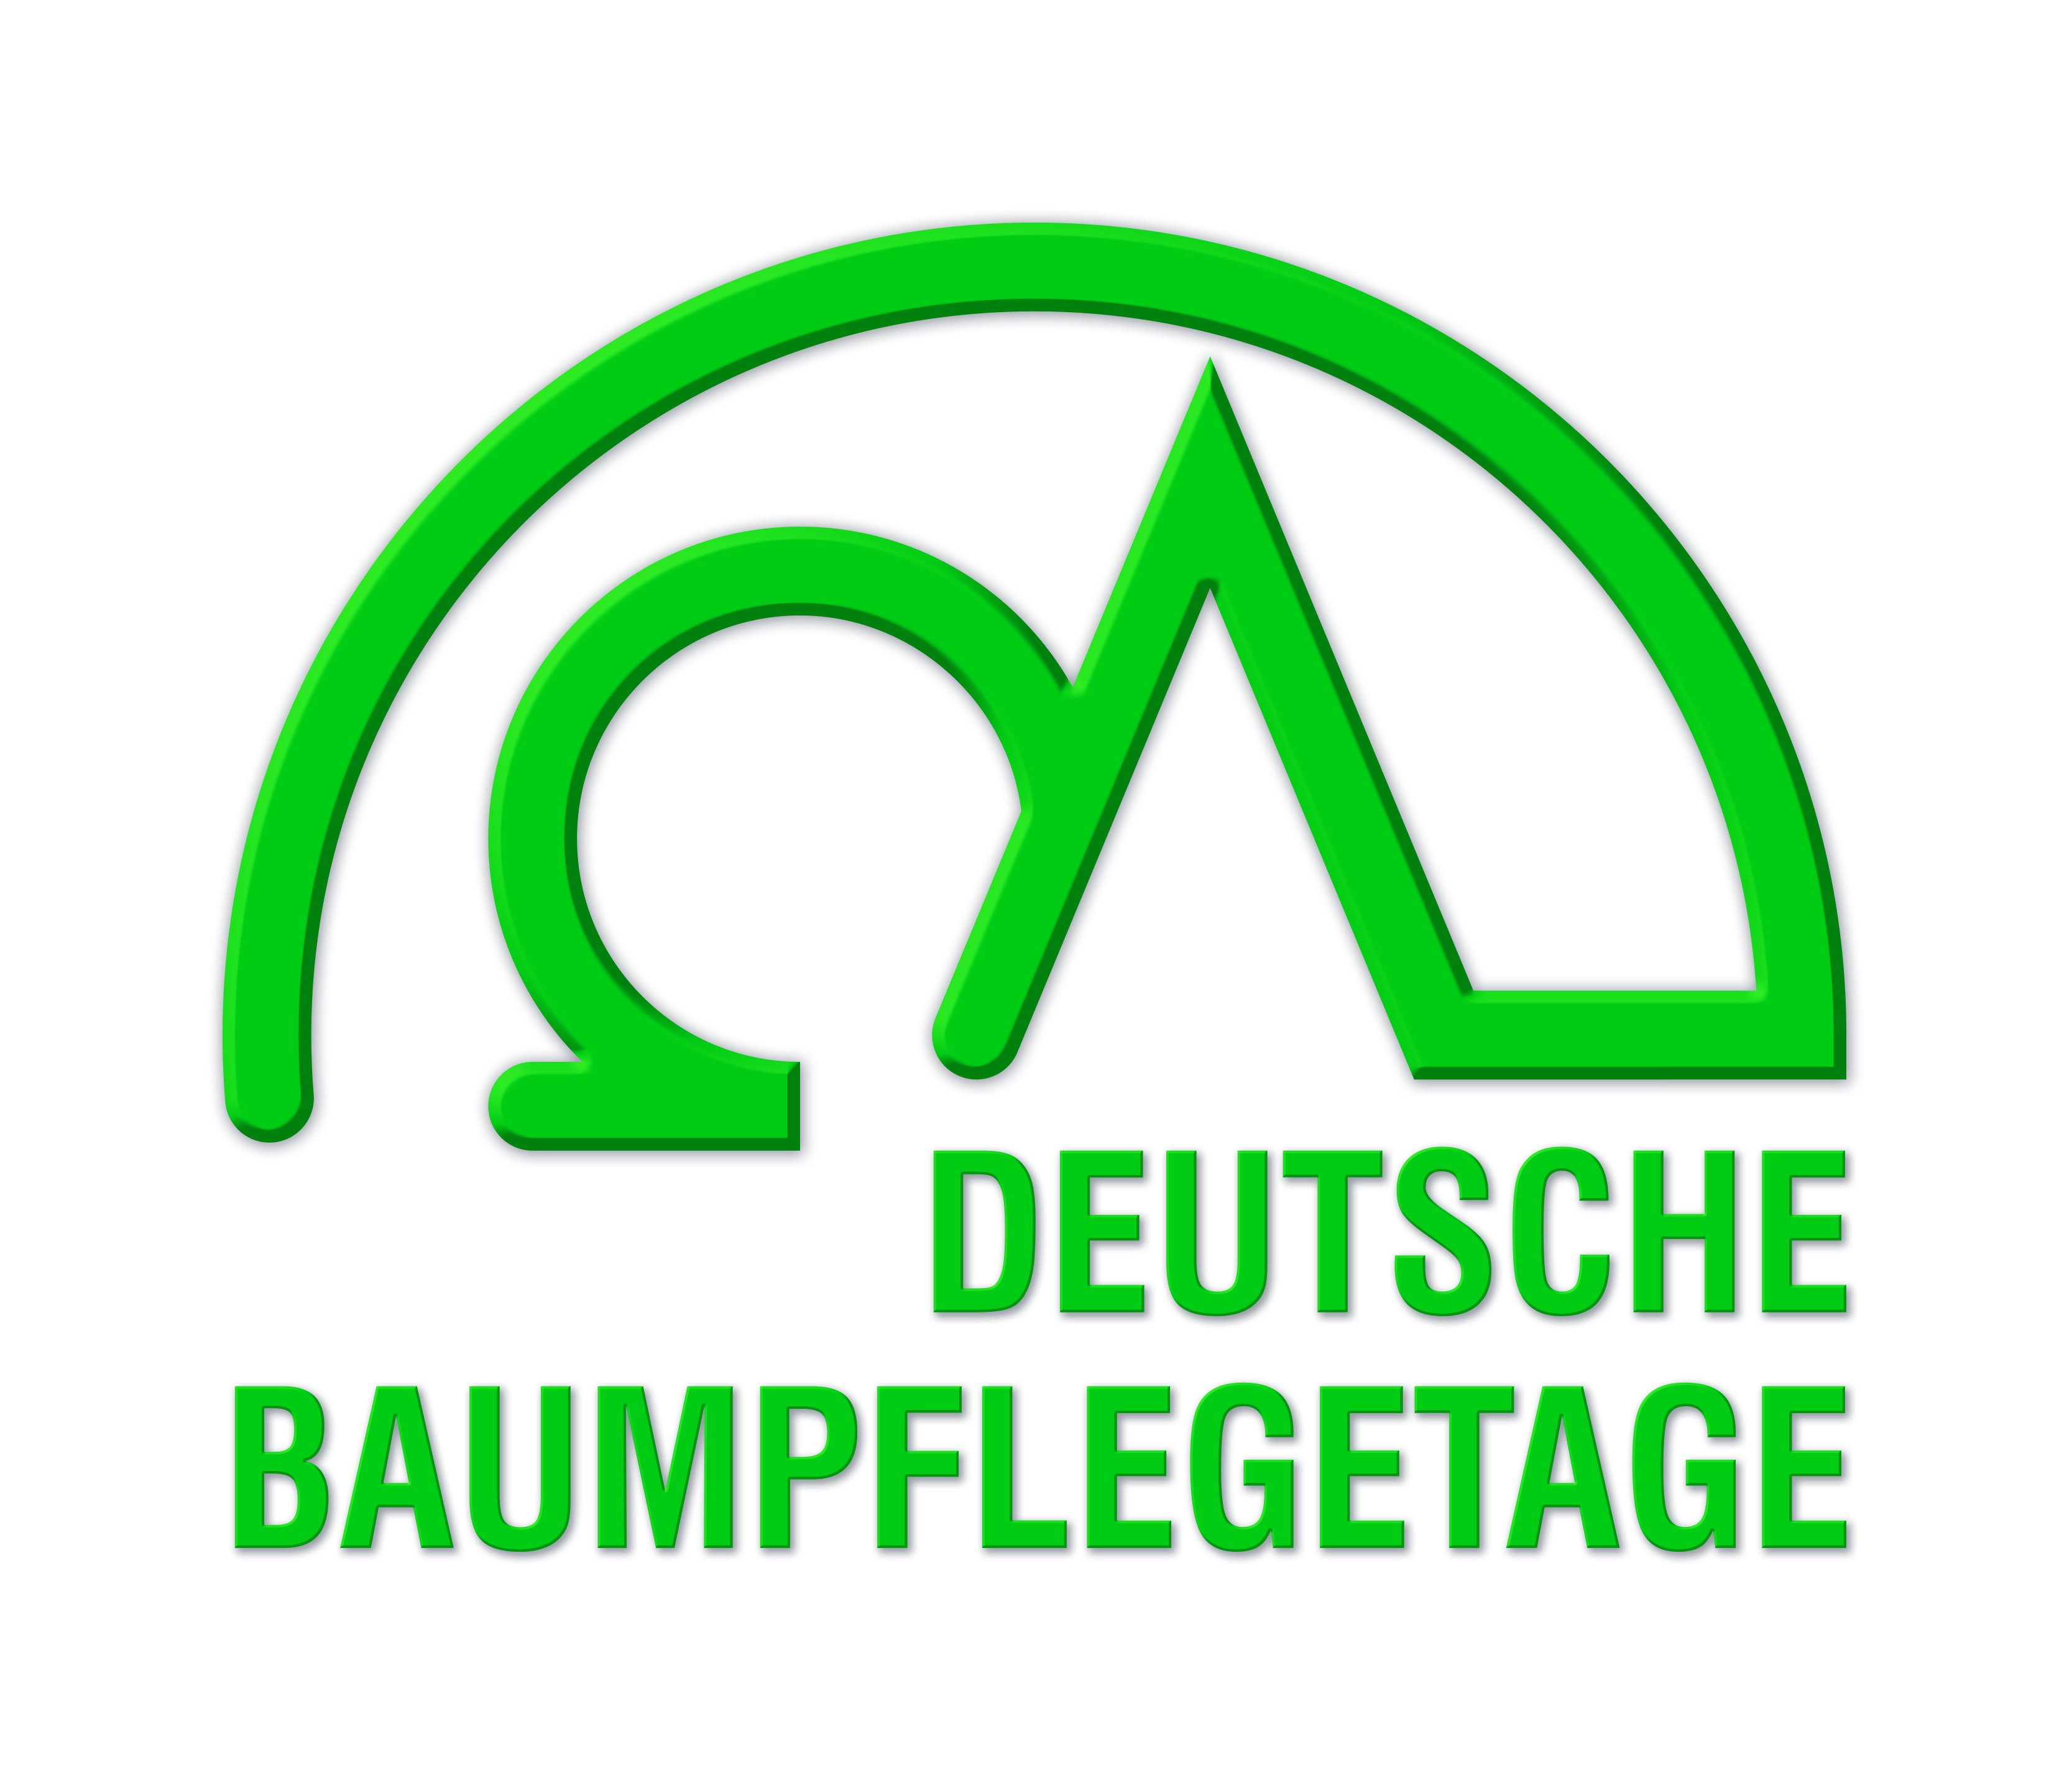 ¡Vengan a visitarnos a los Deutsche Baumpflegetage del 24 al 26 de abril de 2018!